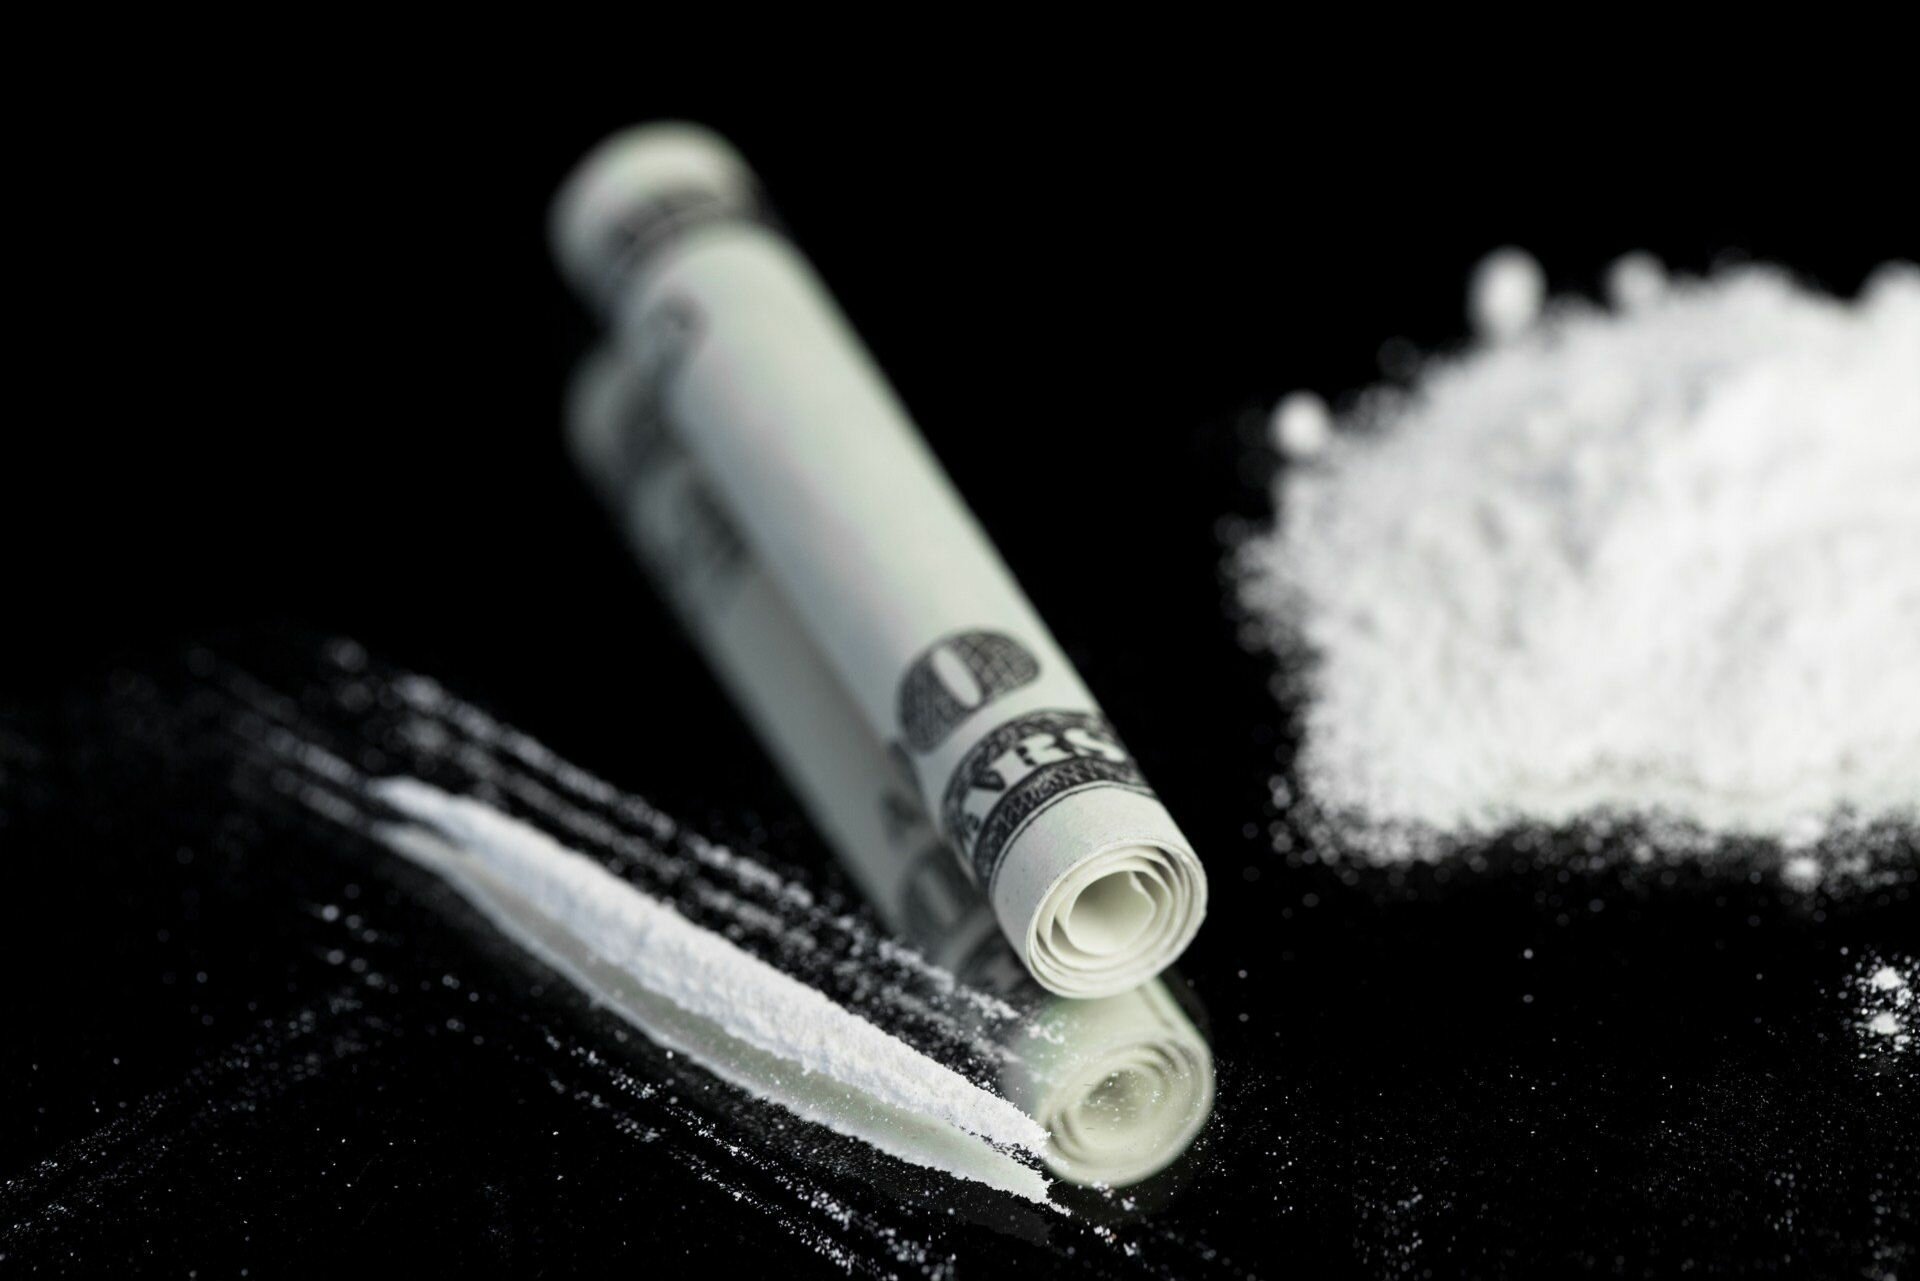 Аудио наркотики кокаин за полграмма марихуаны